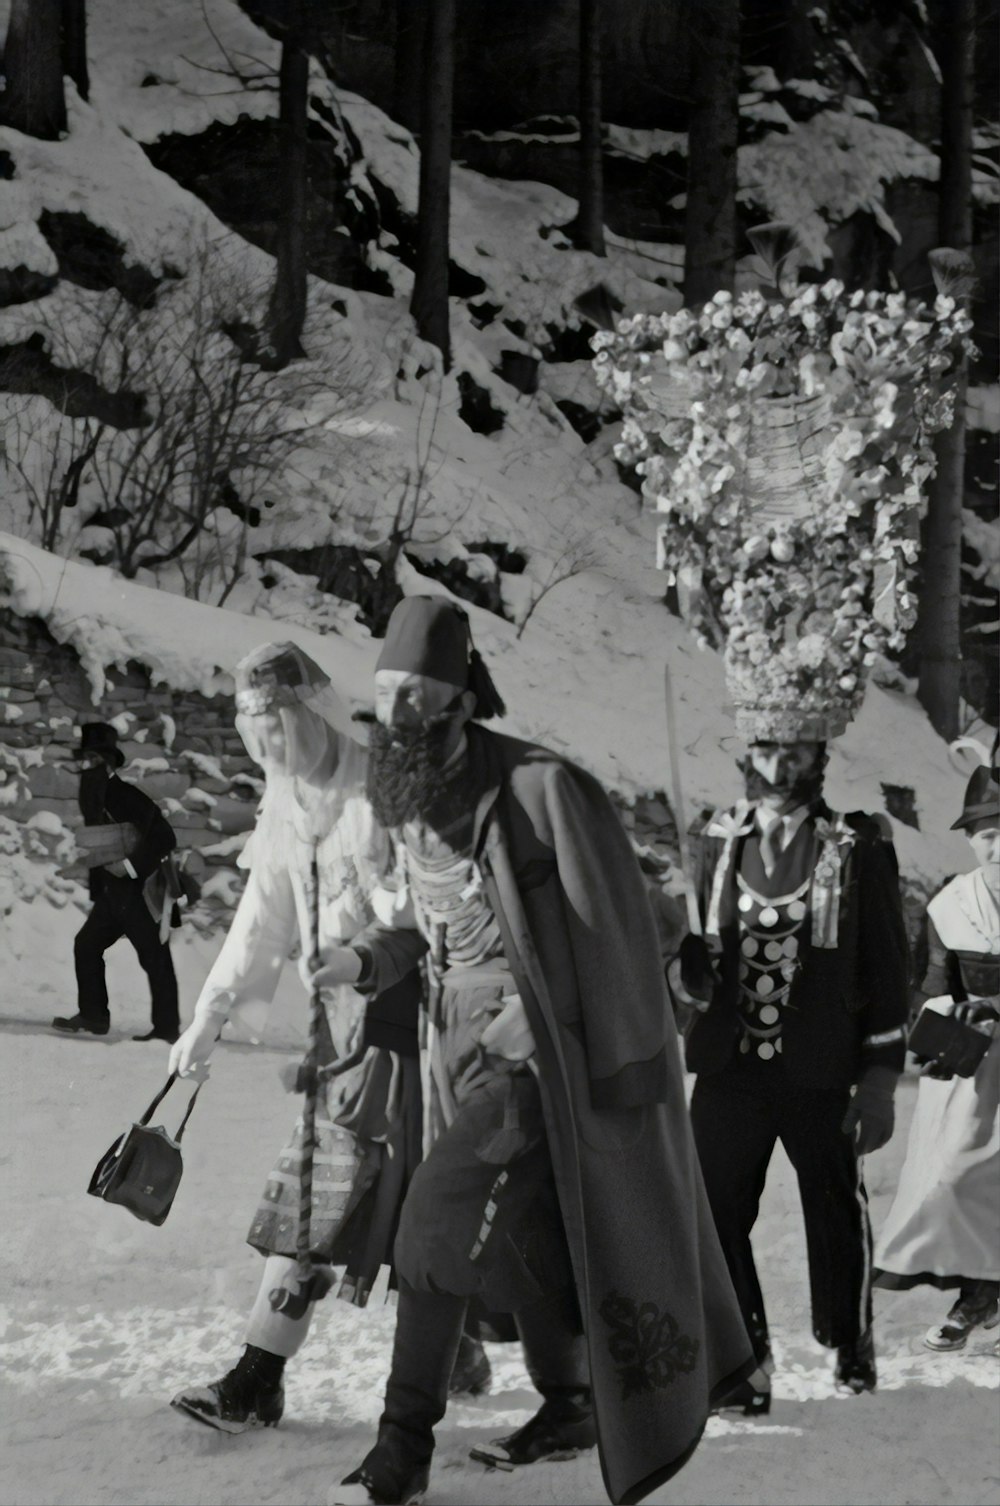 fotografia in scala di grigi di uomini che camminano sulla neve